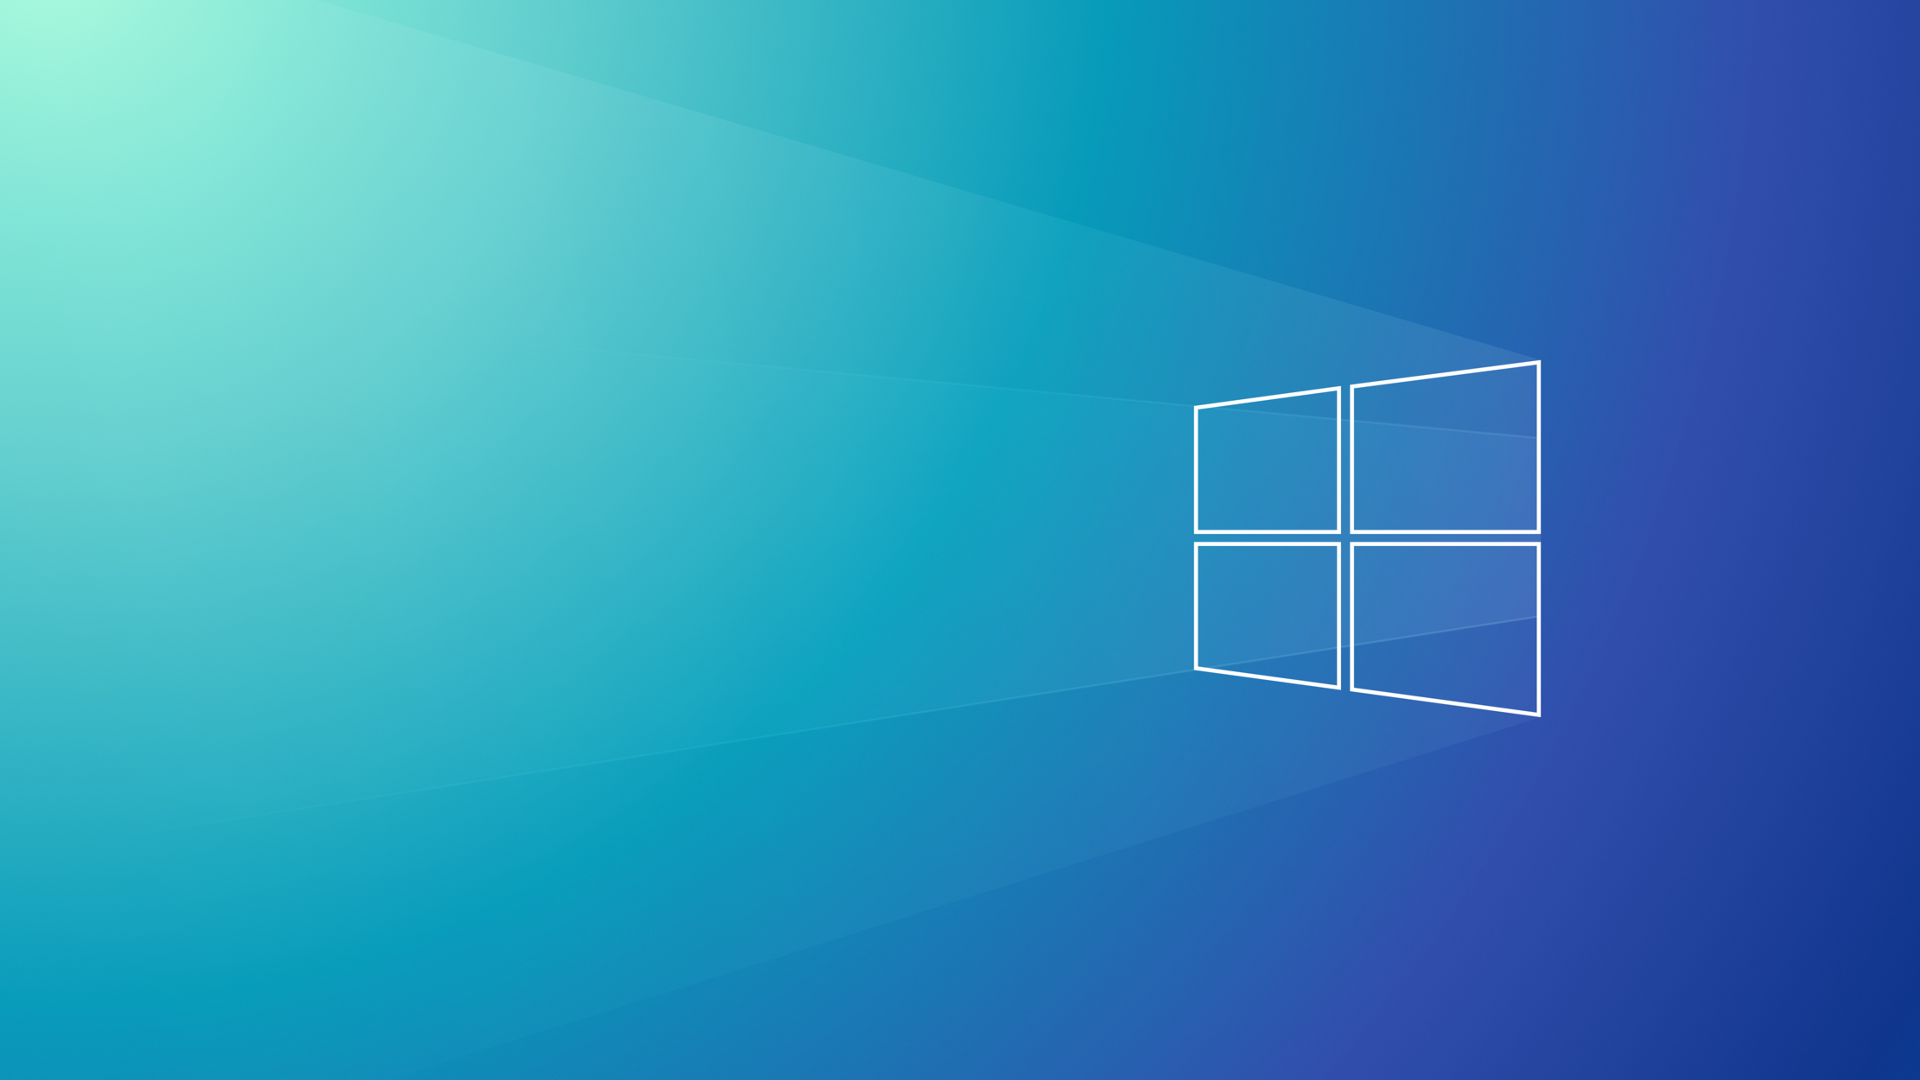 Free download Windows 11 wallpaper (Tải hình nền Windows 11 miễn phí) Tự hào giới thiệu tới bạn bộ sưu tập hình nền Windows 11 đẹp nhất và miễn phí để tải về. Chúng tôi cung cấp các hình ảnh độ phân giải cao và màu sắc tuyệt đẹp để giúp cho máy tính của bạn trở nên sinh động và đẹp mắt hơn. Hãy truy cập ngay để thưởng thức.